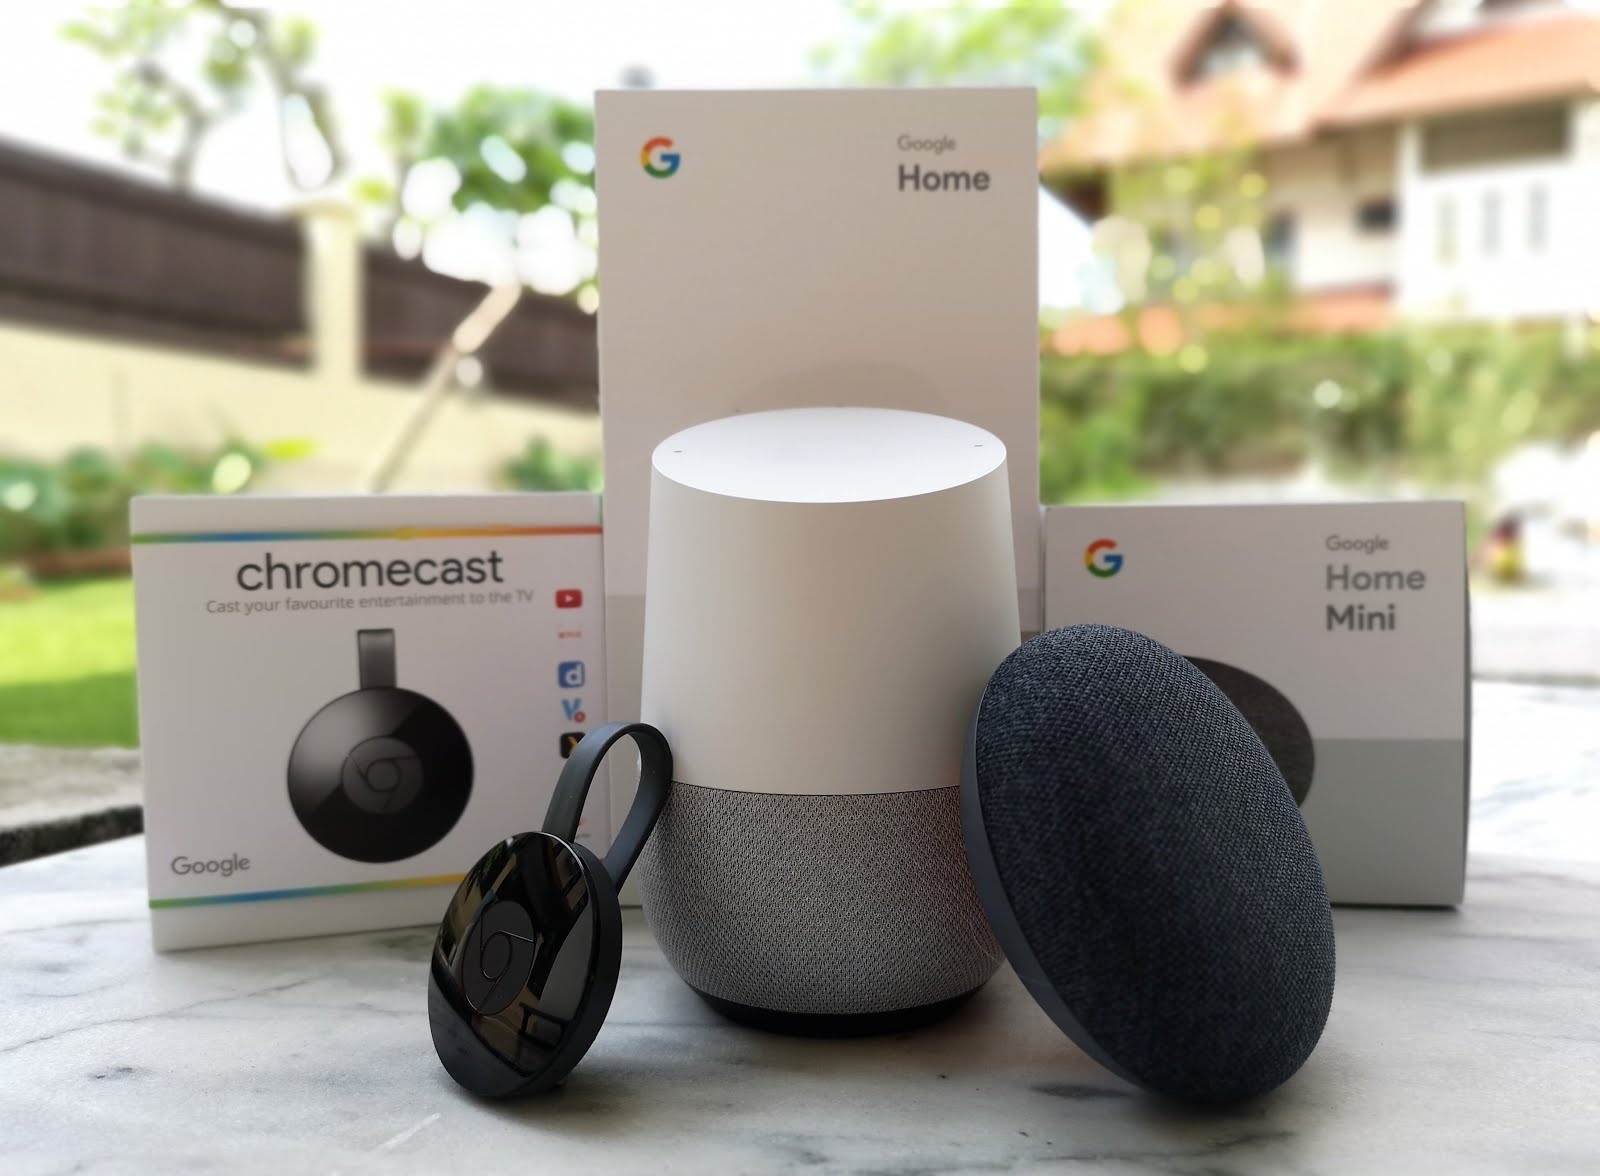 How To Chromecast To Google Home